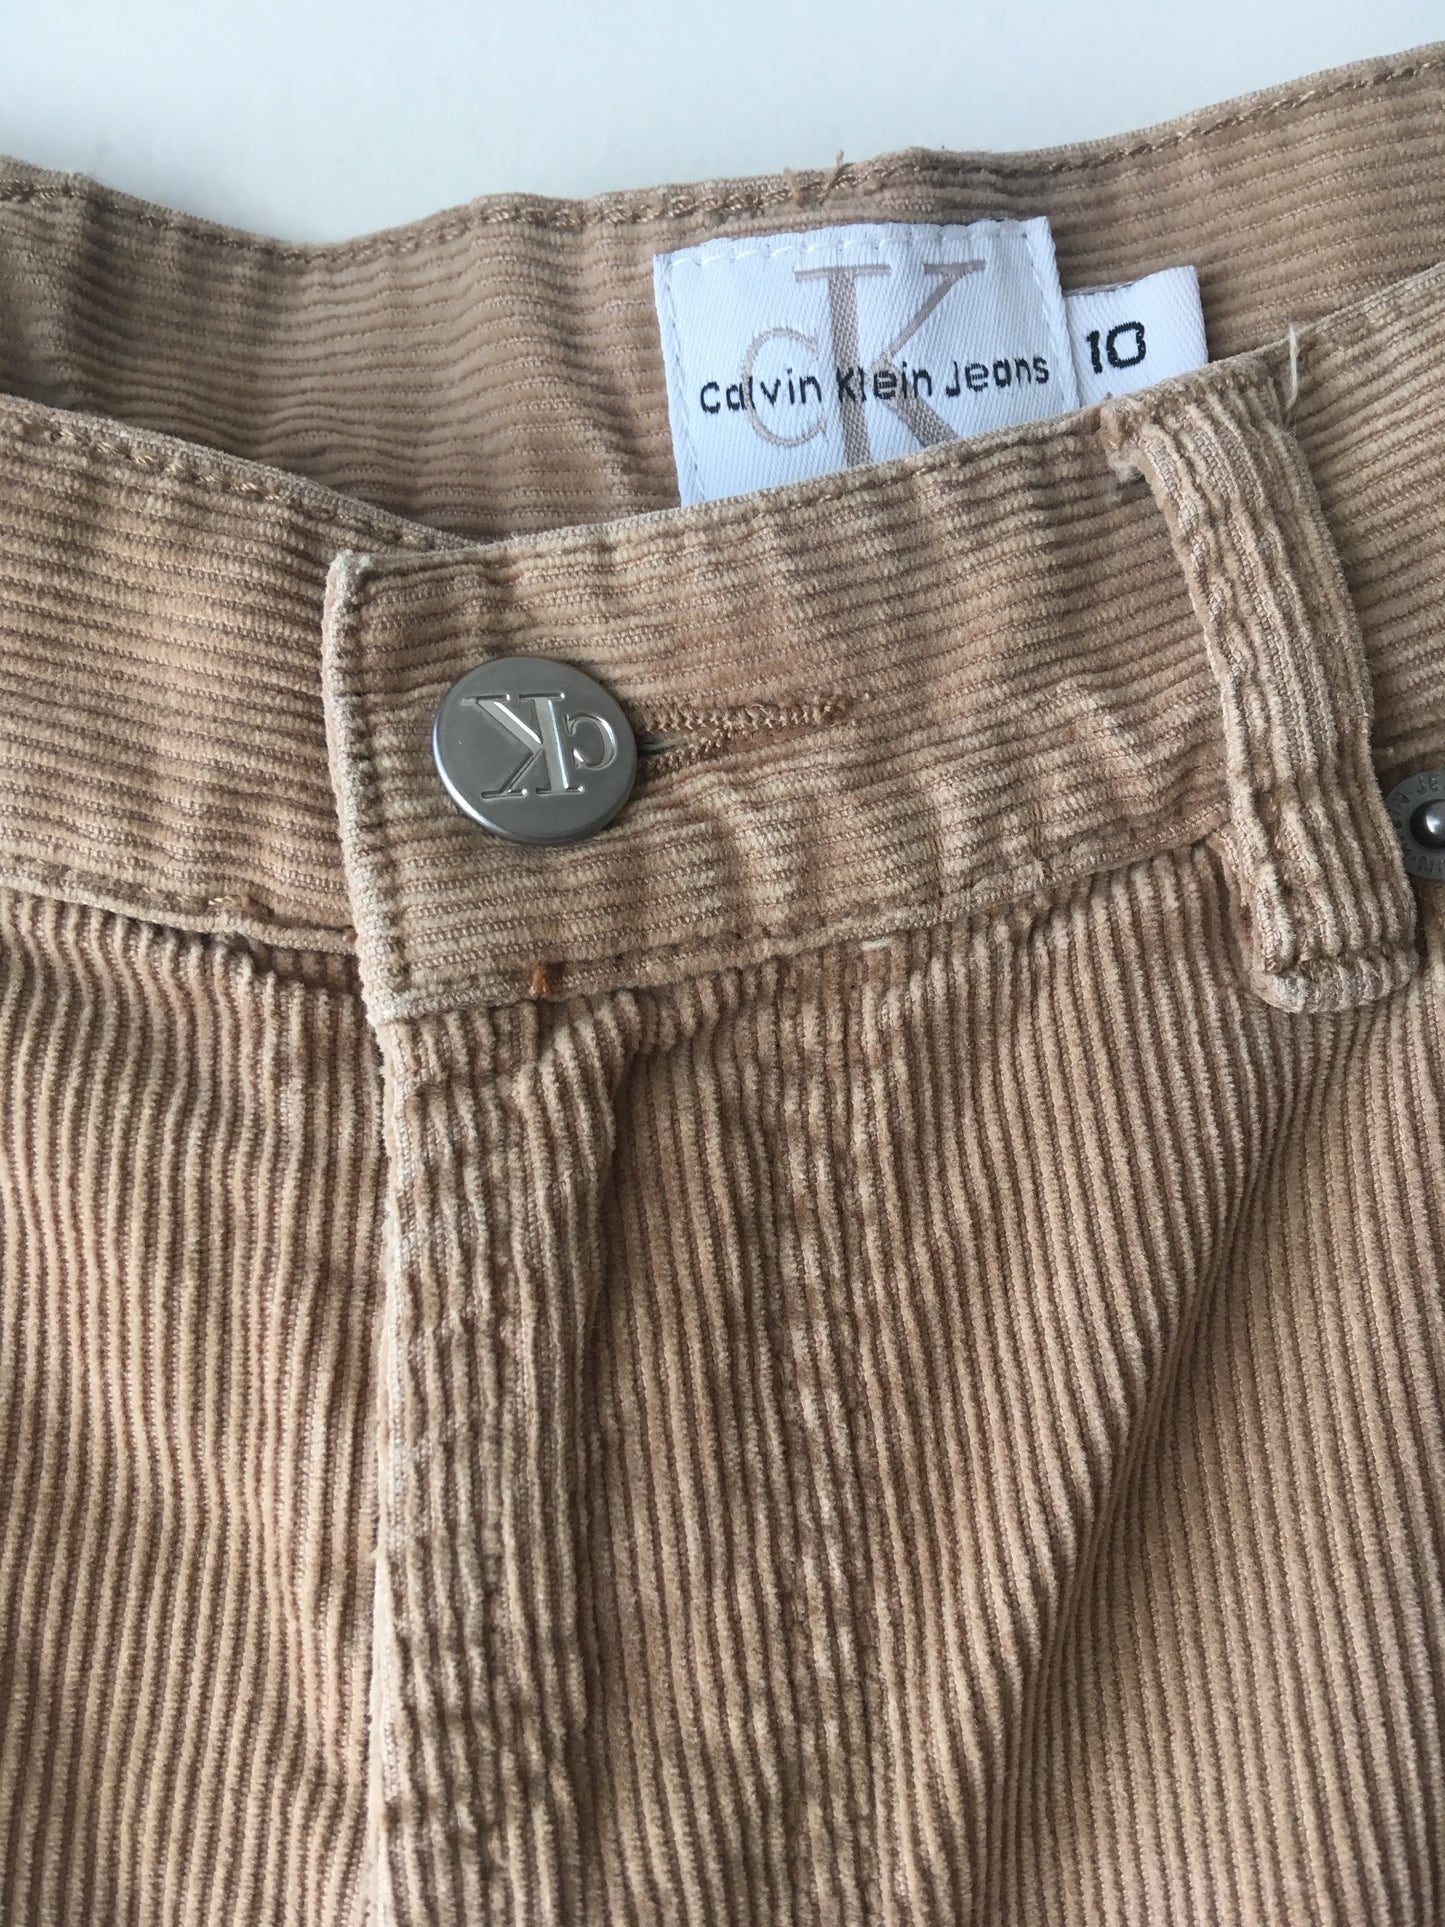 Pantalón Calvin Klein